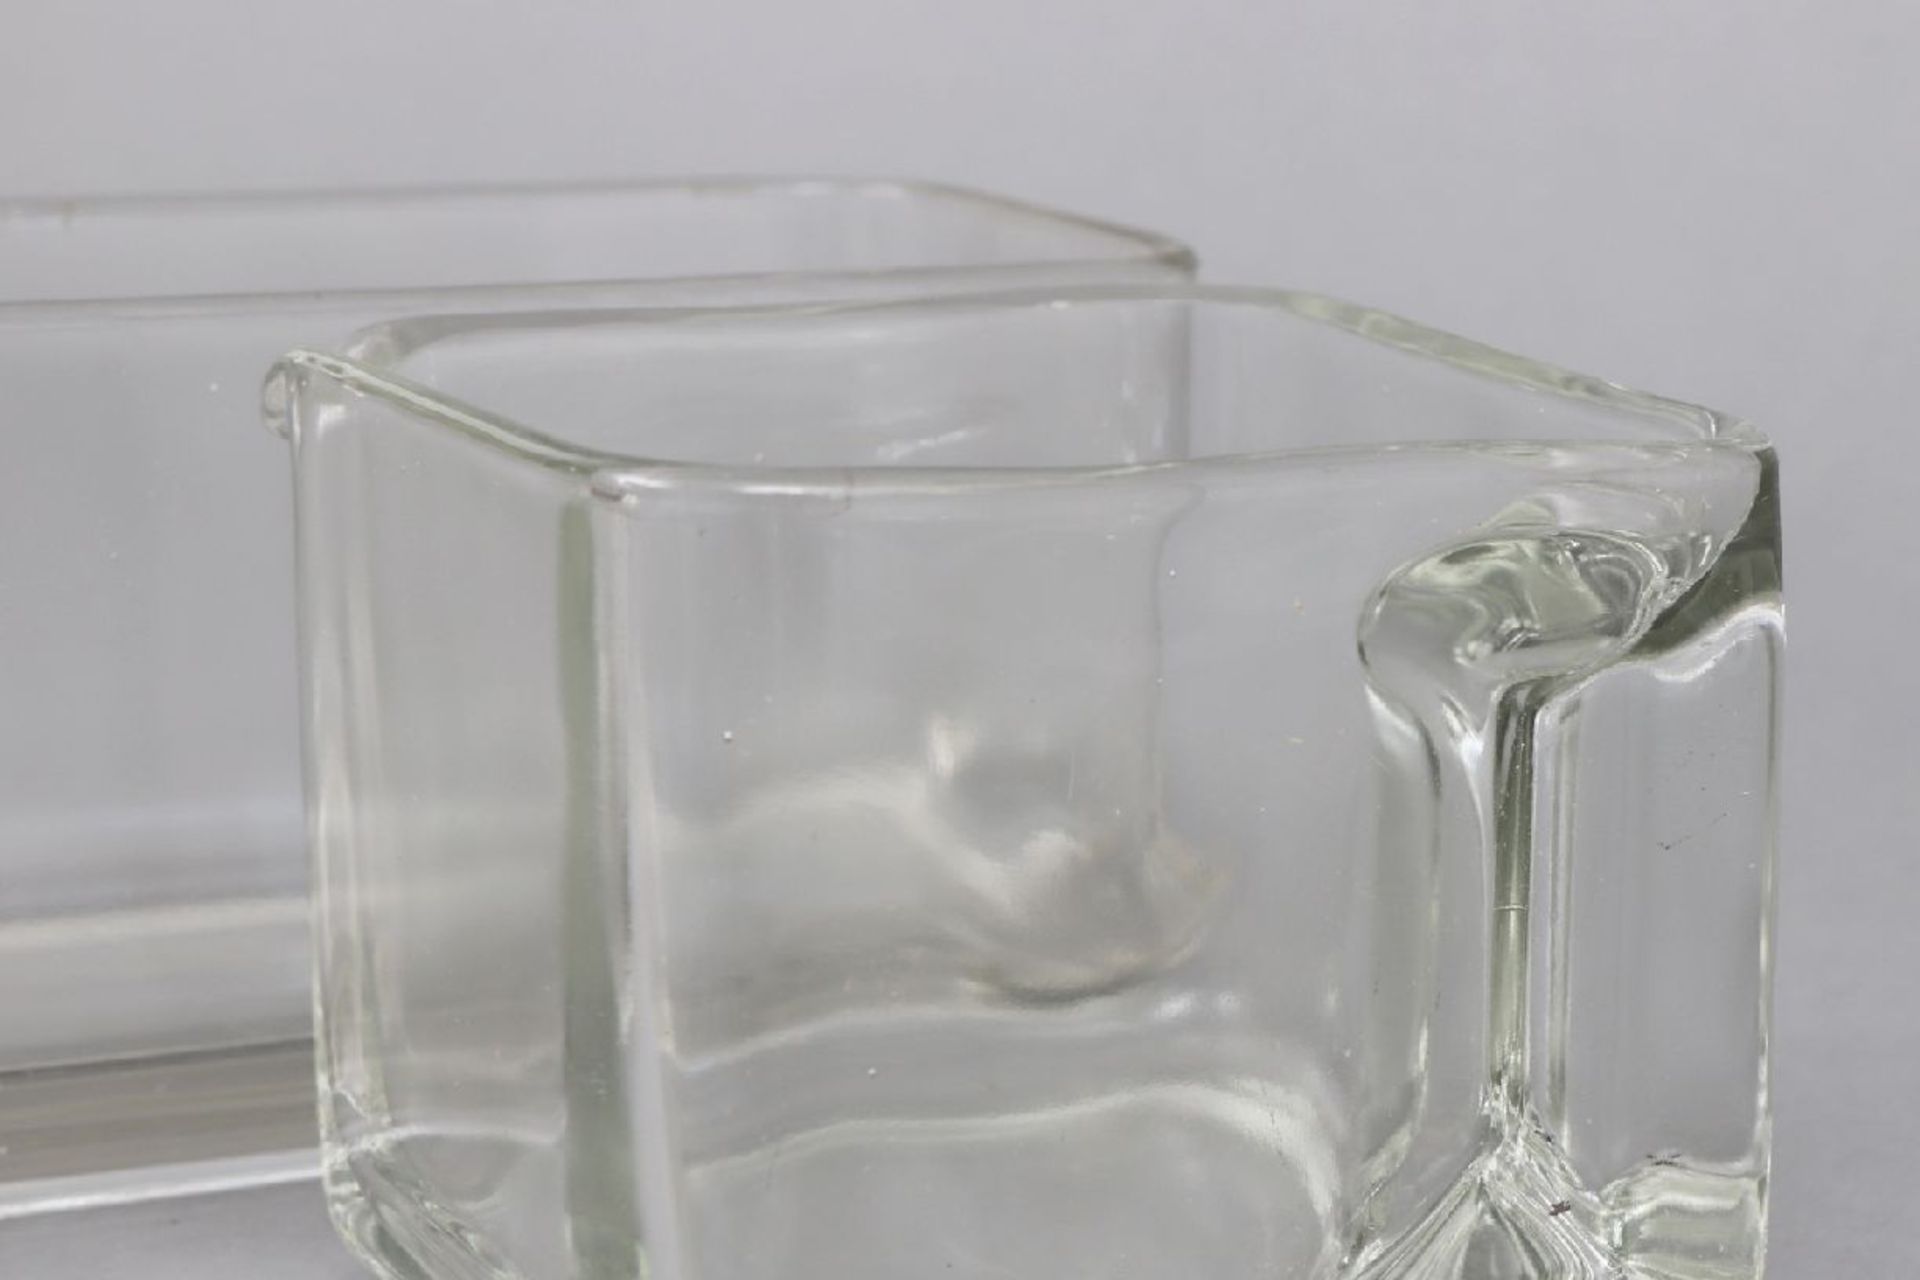 2 Teile WAGENFELD Kubus VorratsgeschirrHersteller VLG (vereinigte Lausitzer Glaswerke), Entwurf - Image 4 of 6